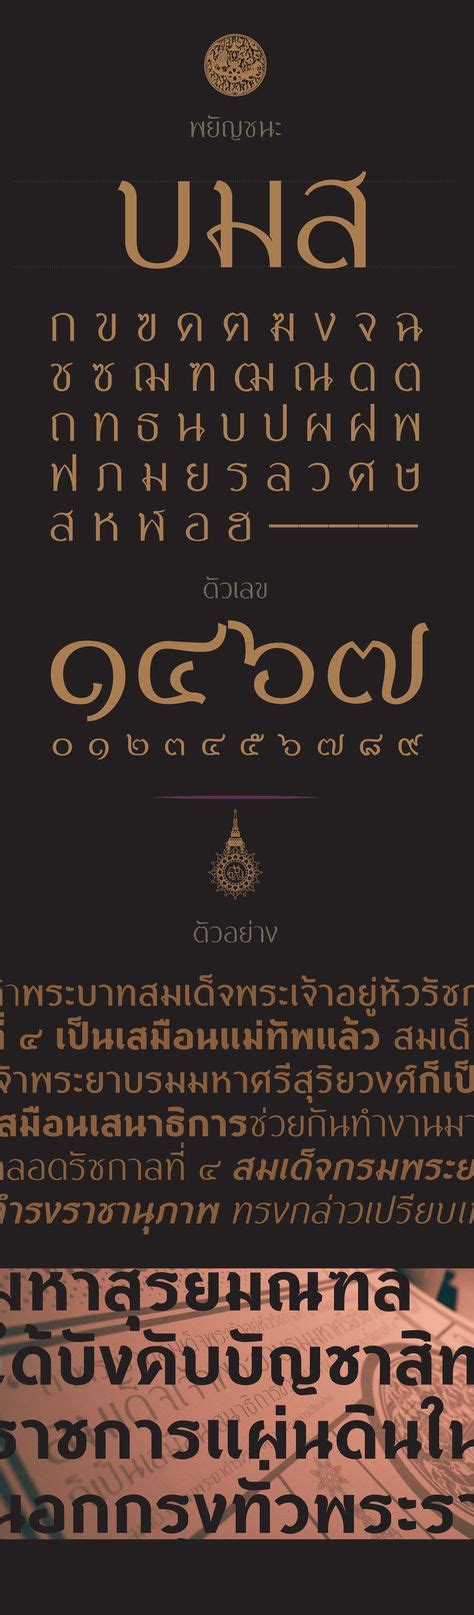 11 Best Thai Typo Images Thai Font Thai Design Typography